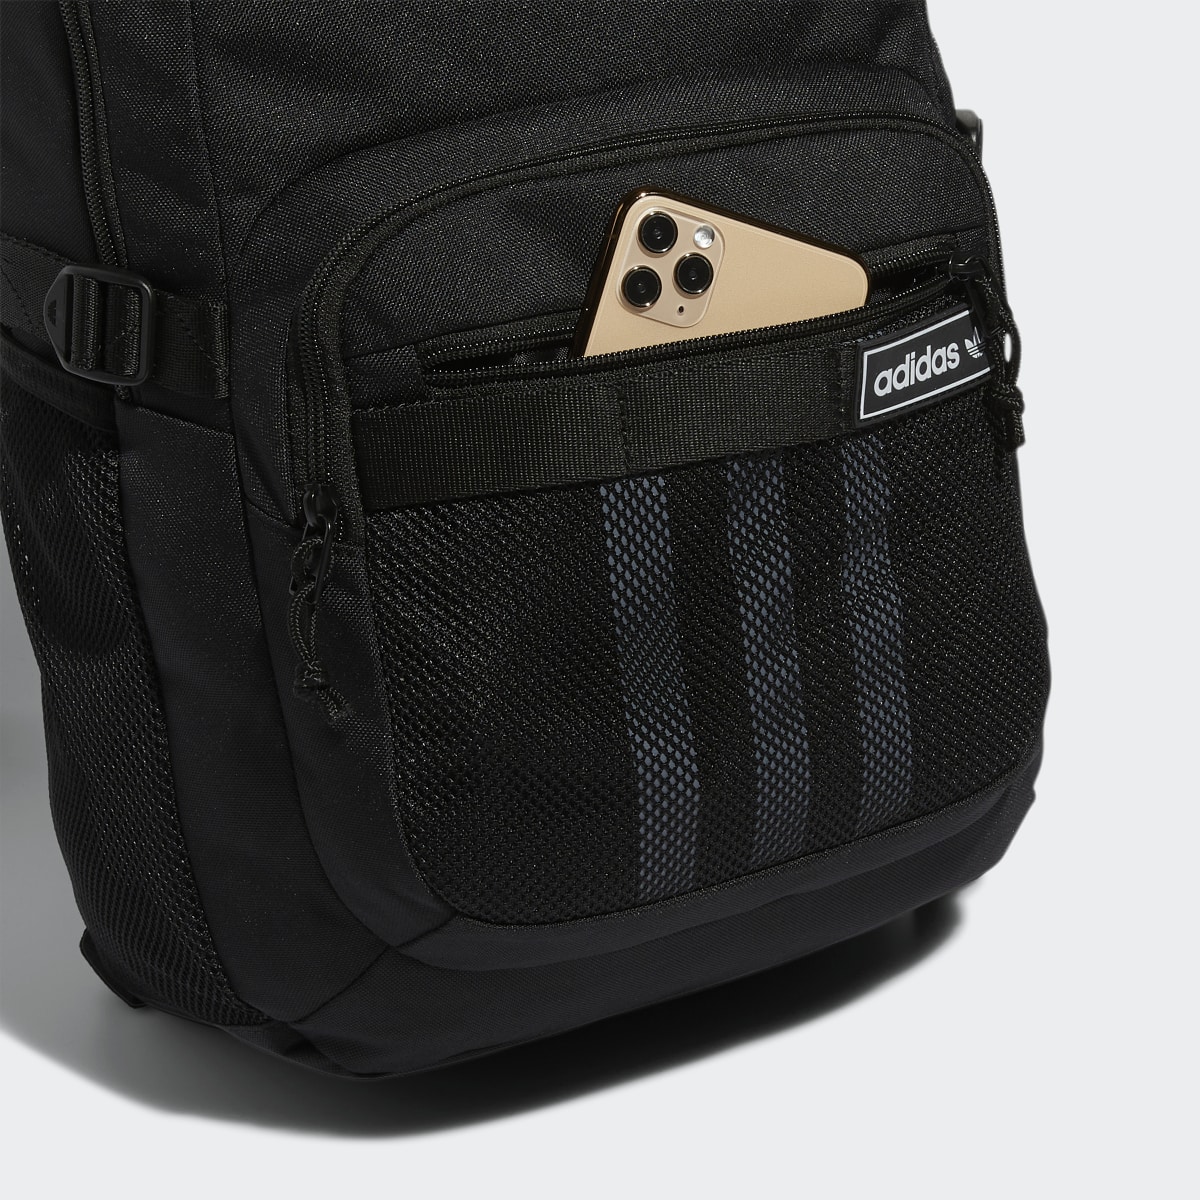 Adidas Energy Backpack. 7